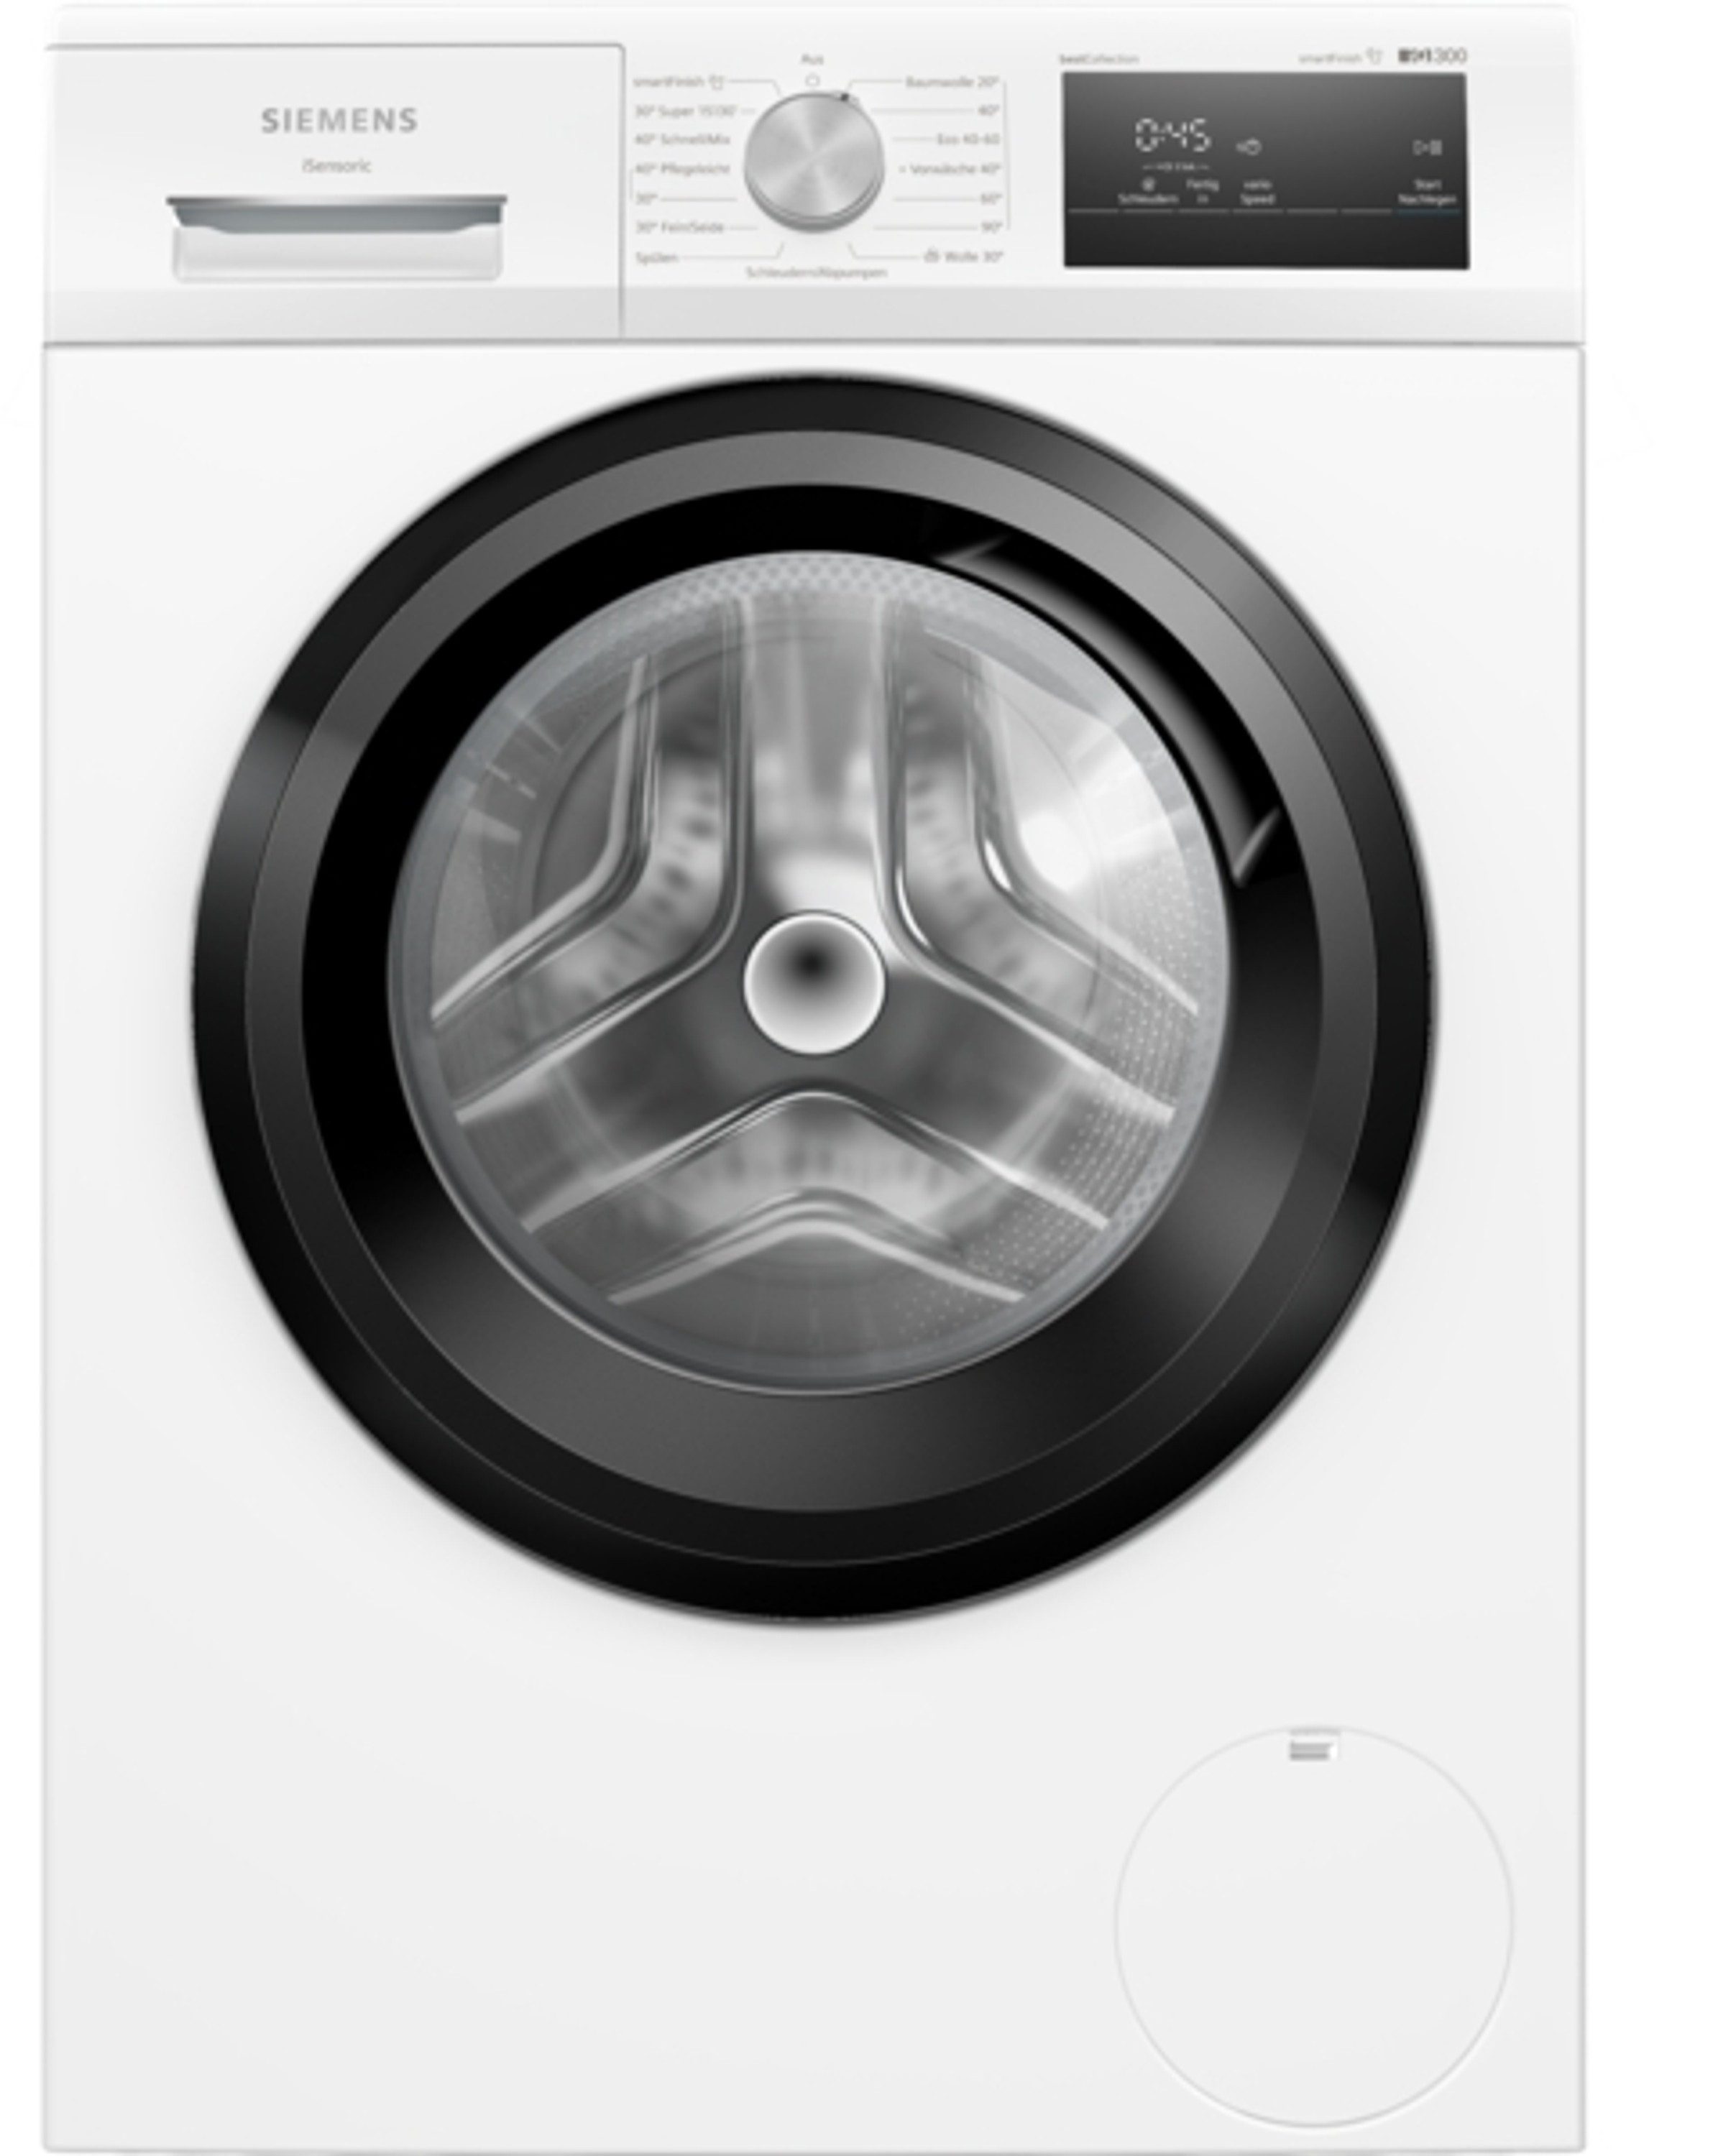 SIEMENS Waschmaschine WM14N0G4, 8 kg, 1400 U/min, effizient, langlebig und leise